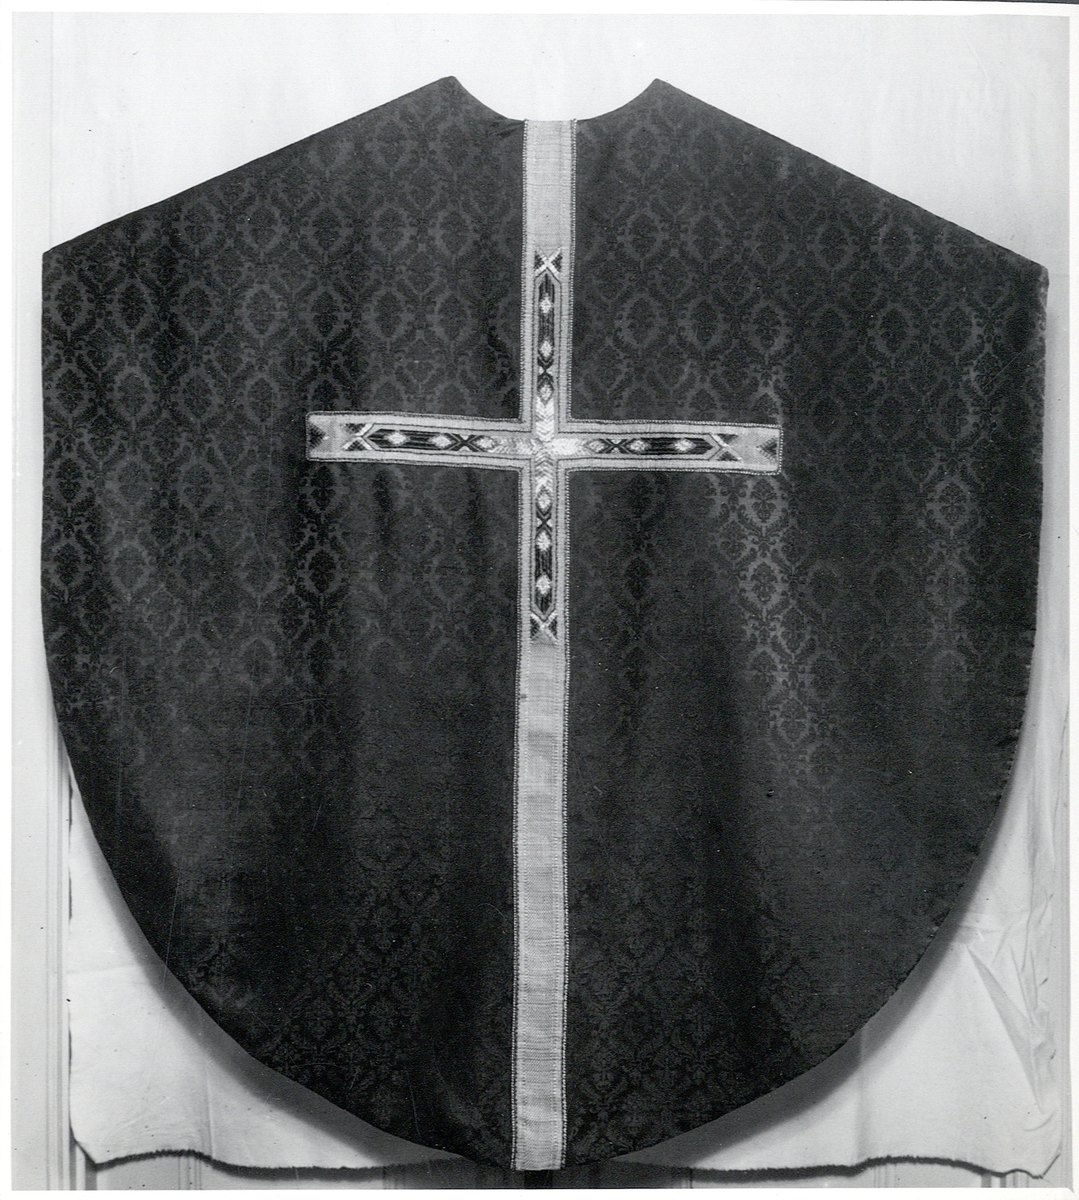 Foto (svart/vitt) av en mörk mässhake (baksidan) i brokad med ljusare, broderat korsparti.

Inskrivet i huvudbok 1983.